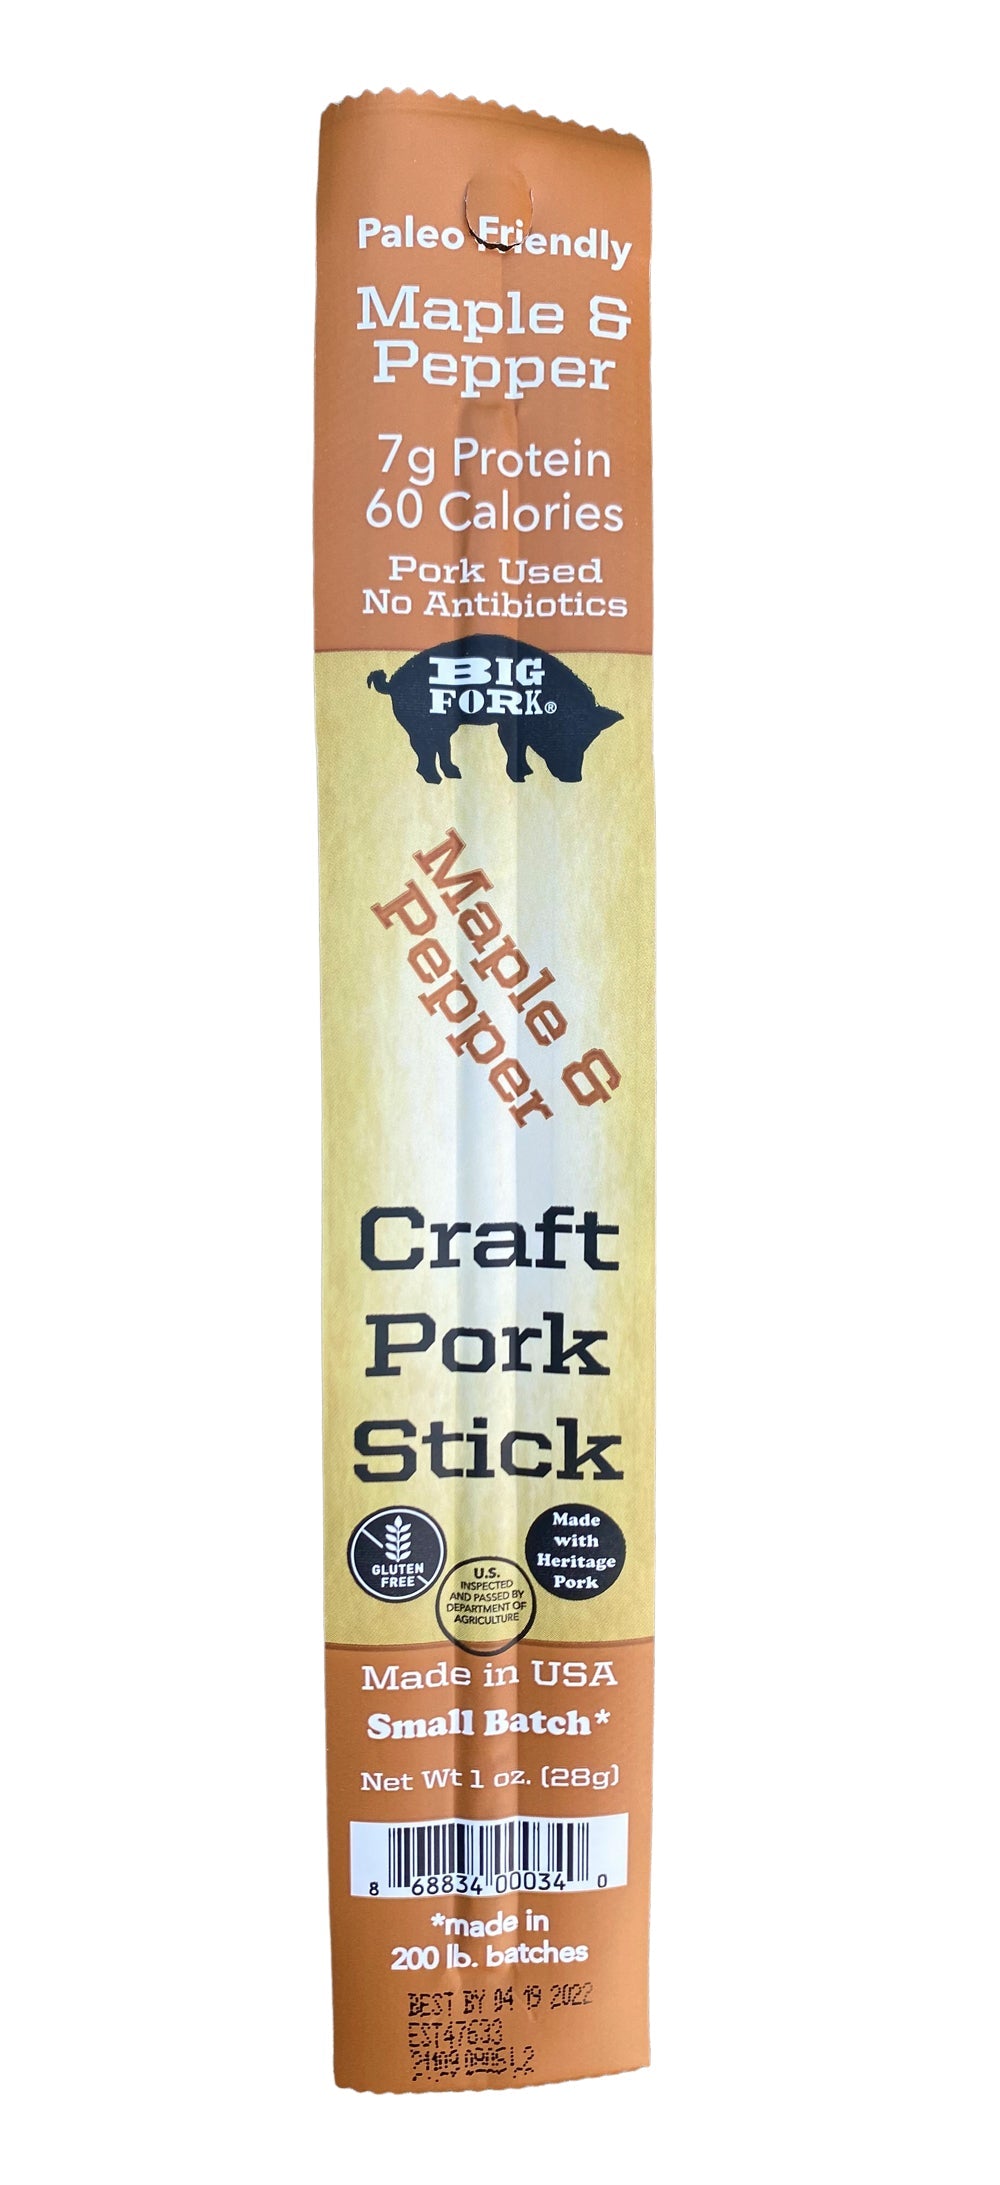 Craft Pork Snack Stick Collection (60 Sticks Total) by Big Fork Brands